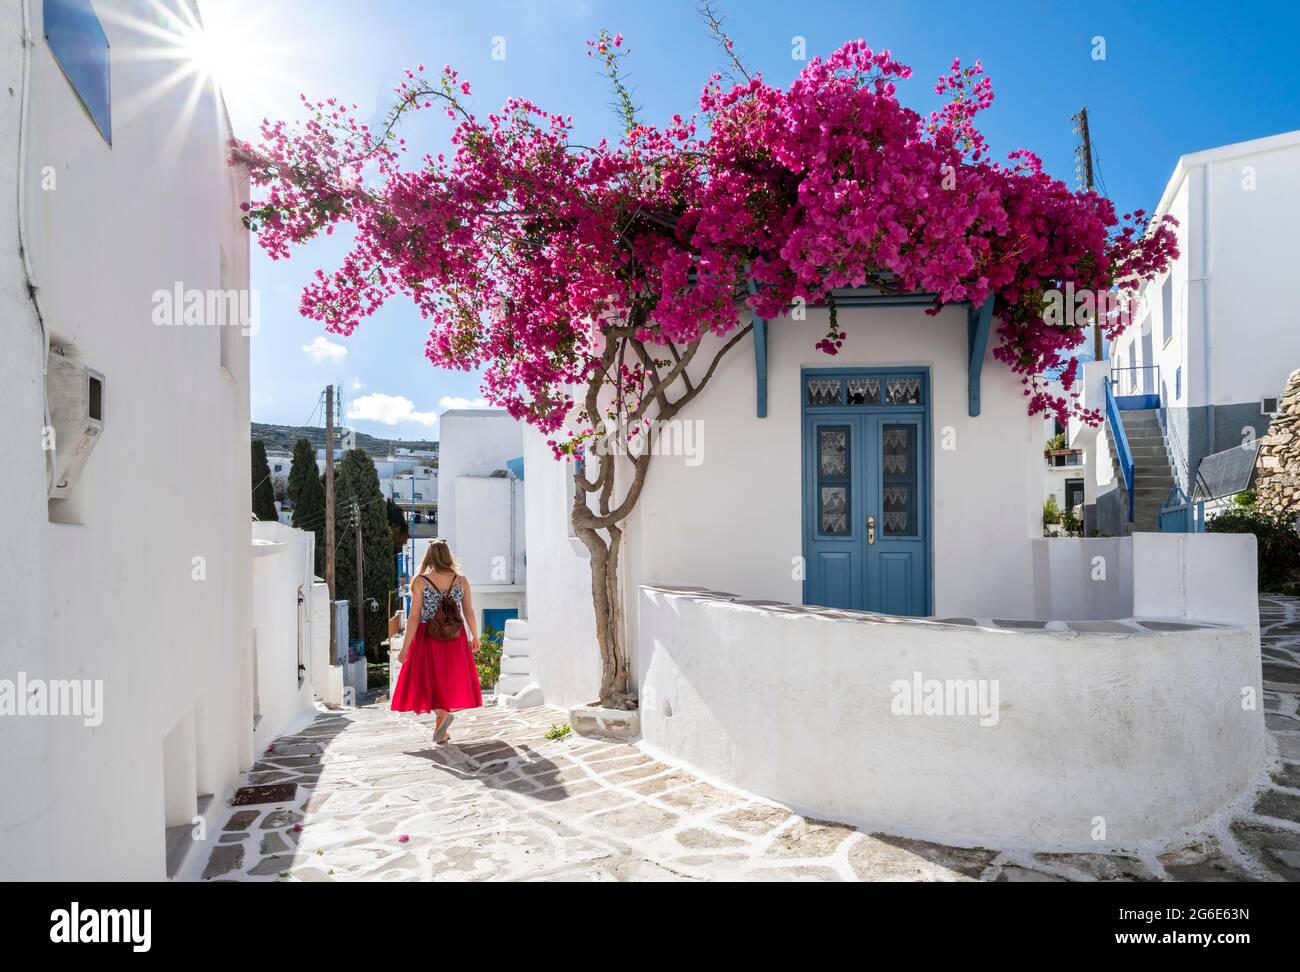 Bianco-blu case con fiore viola Bougainvillea (Bougainvillea), giovane donna con abito rosso nel centro storico di Lefkes, Paros, Cicladi, Grecia Foto Stock